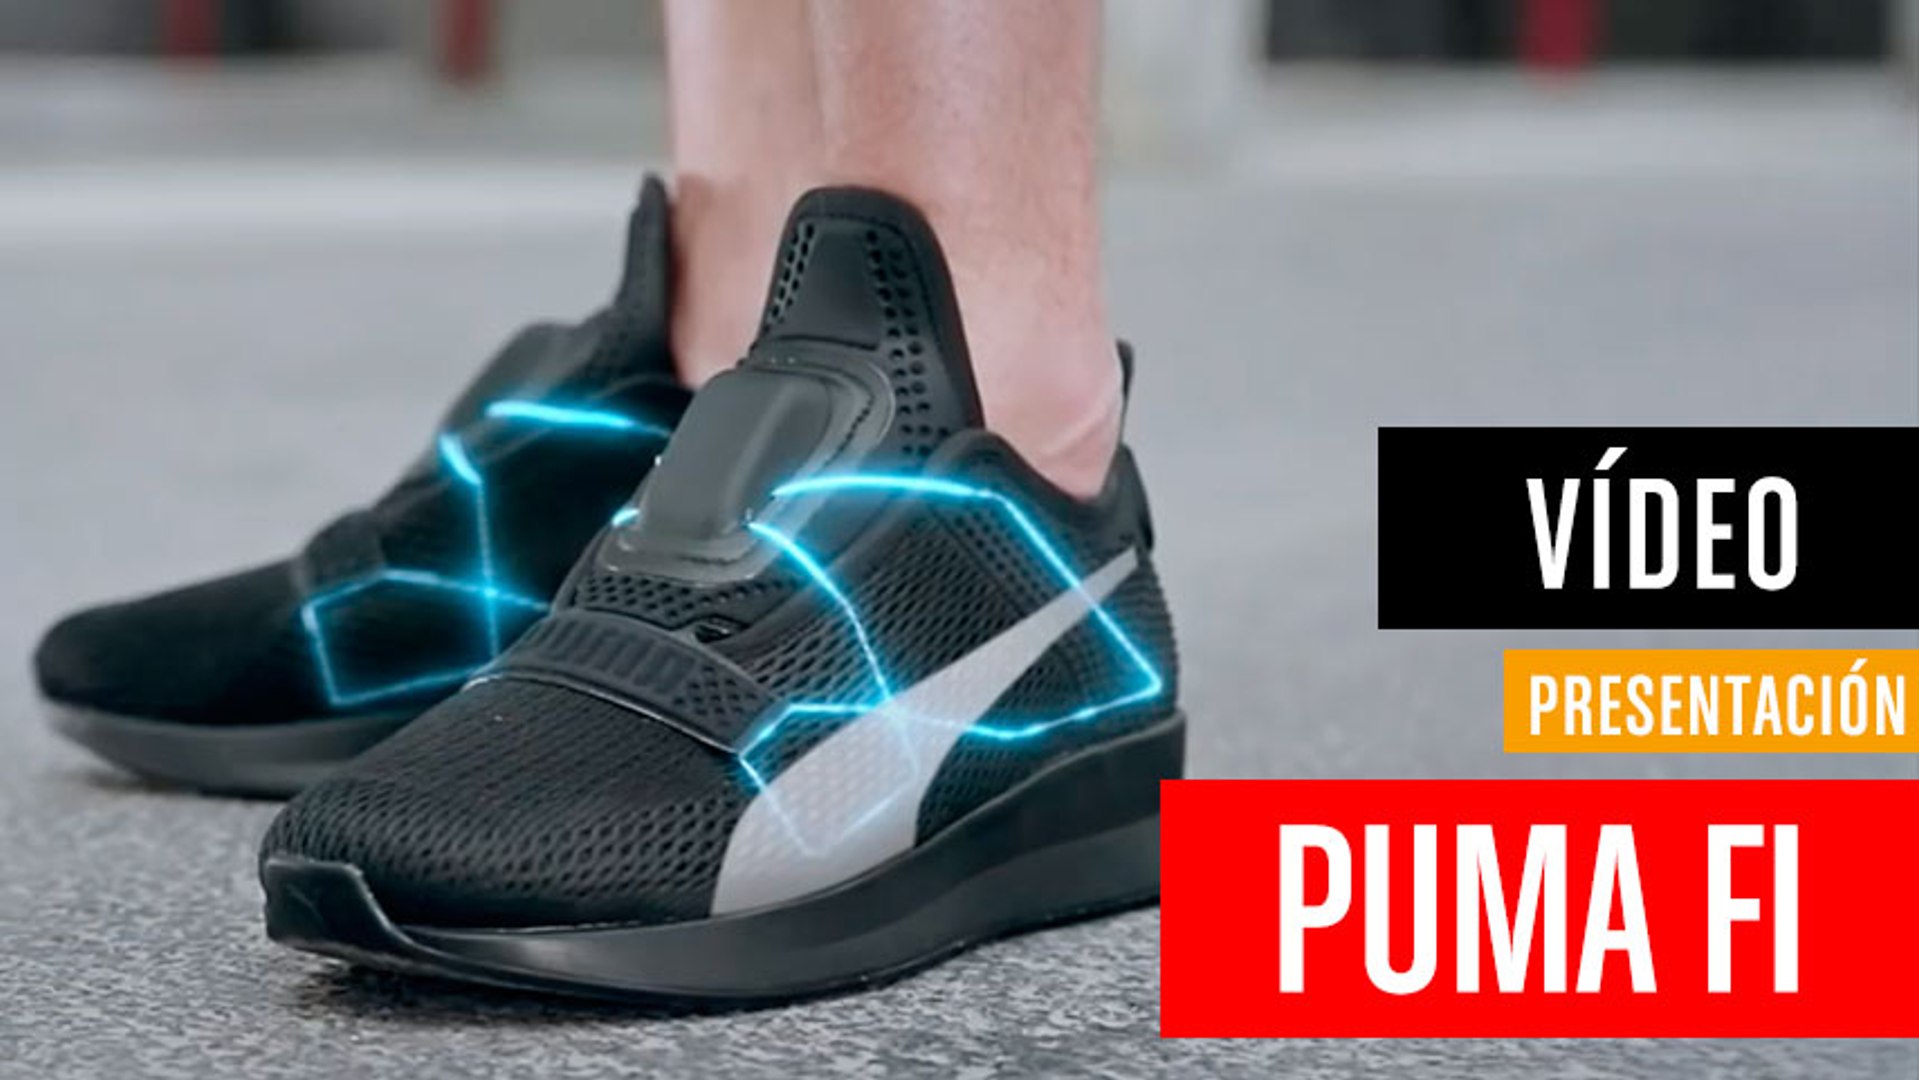 Puma planta cara a Nike con sus propias zapatillas inteligentes - Vídeo  Dailymotion